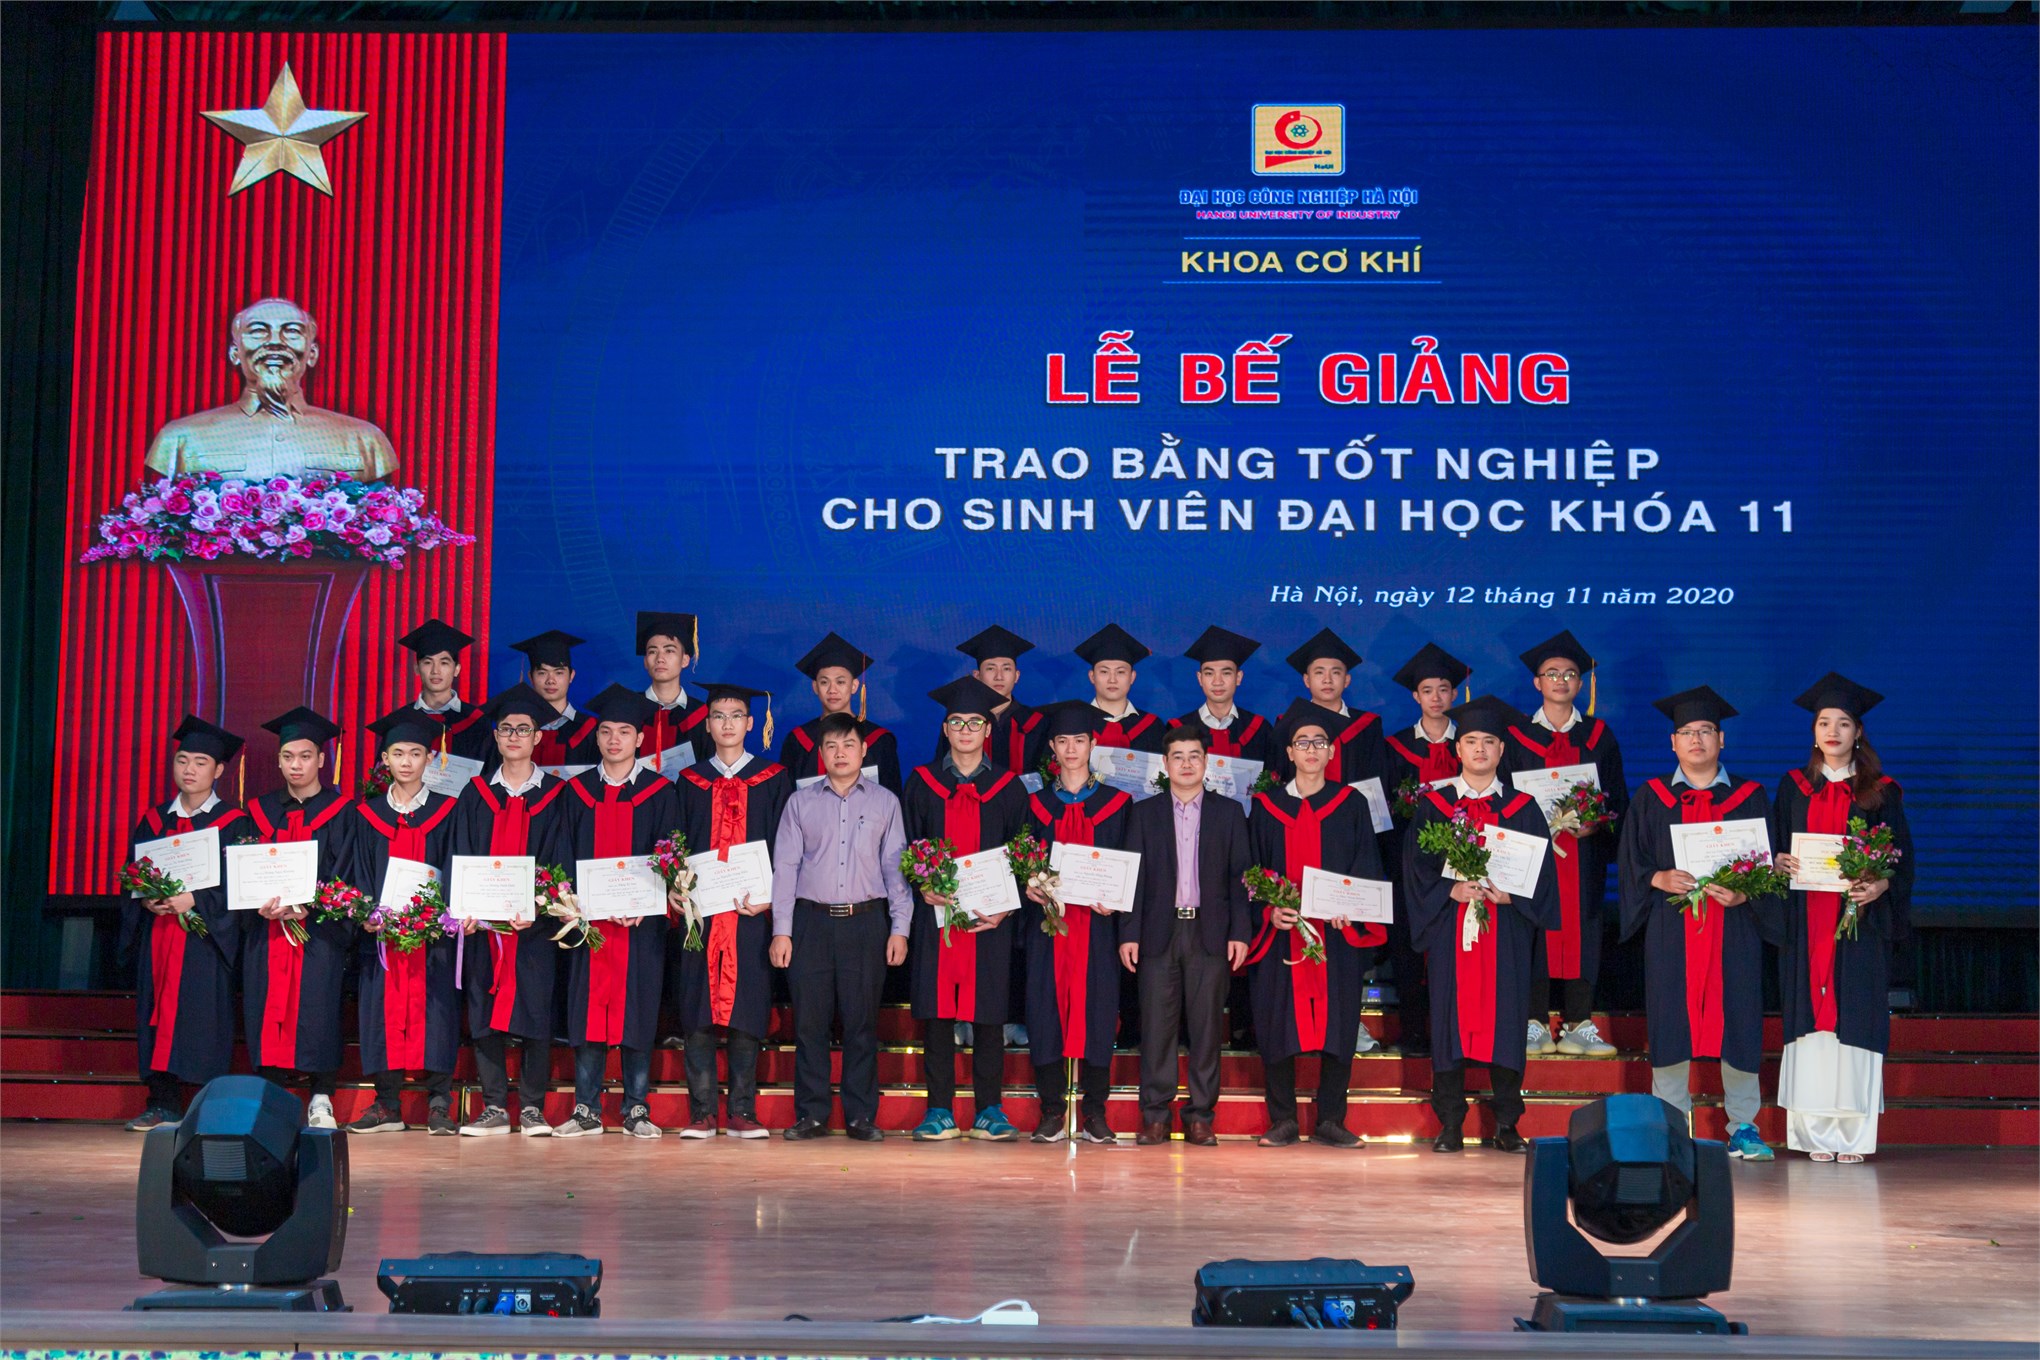 Cô gái đam mê kỹ thuật - Nguyễn Thị Trà cựu sinh viên Cơ khí K11